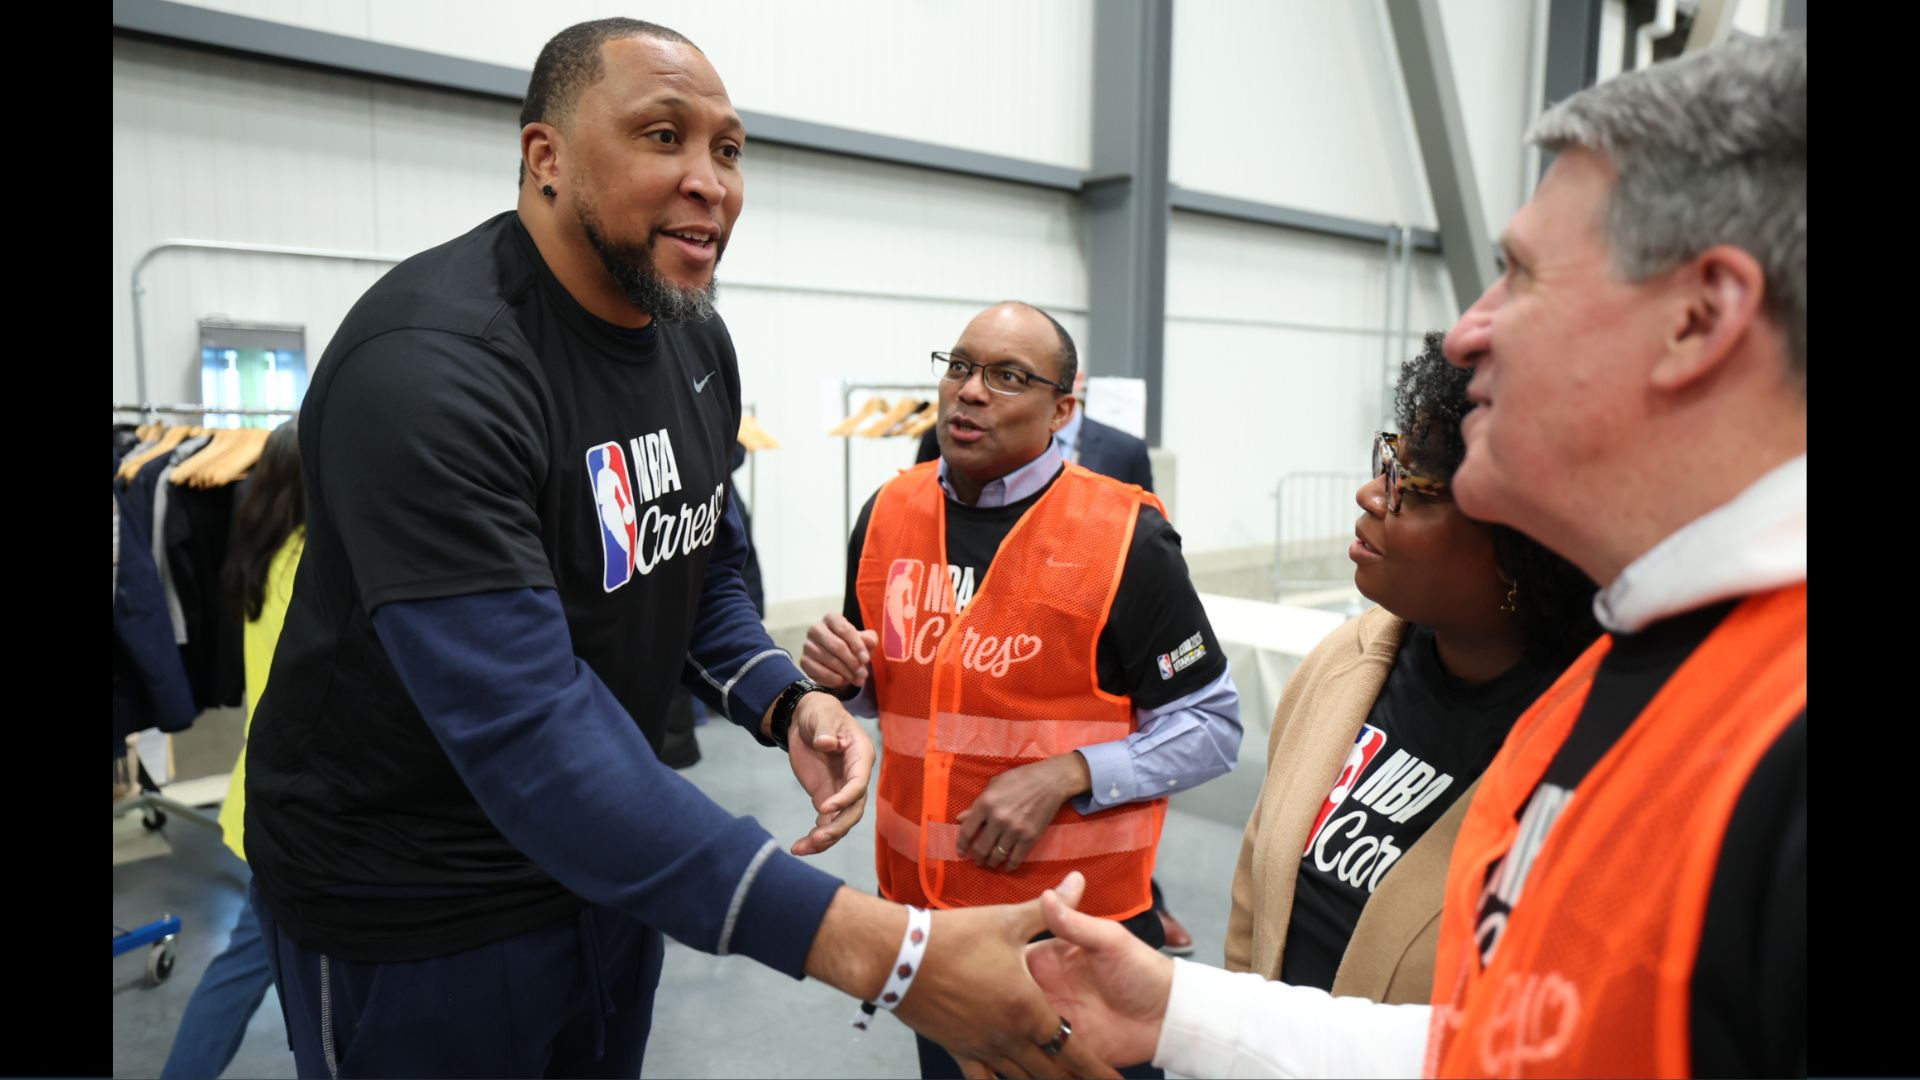 Volunteers needed to help with NBA All-Star weekend in Salt Lake City